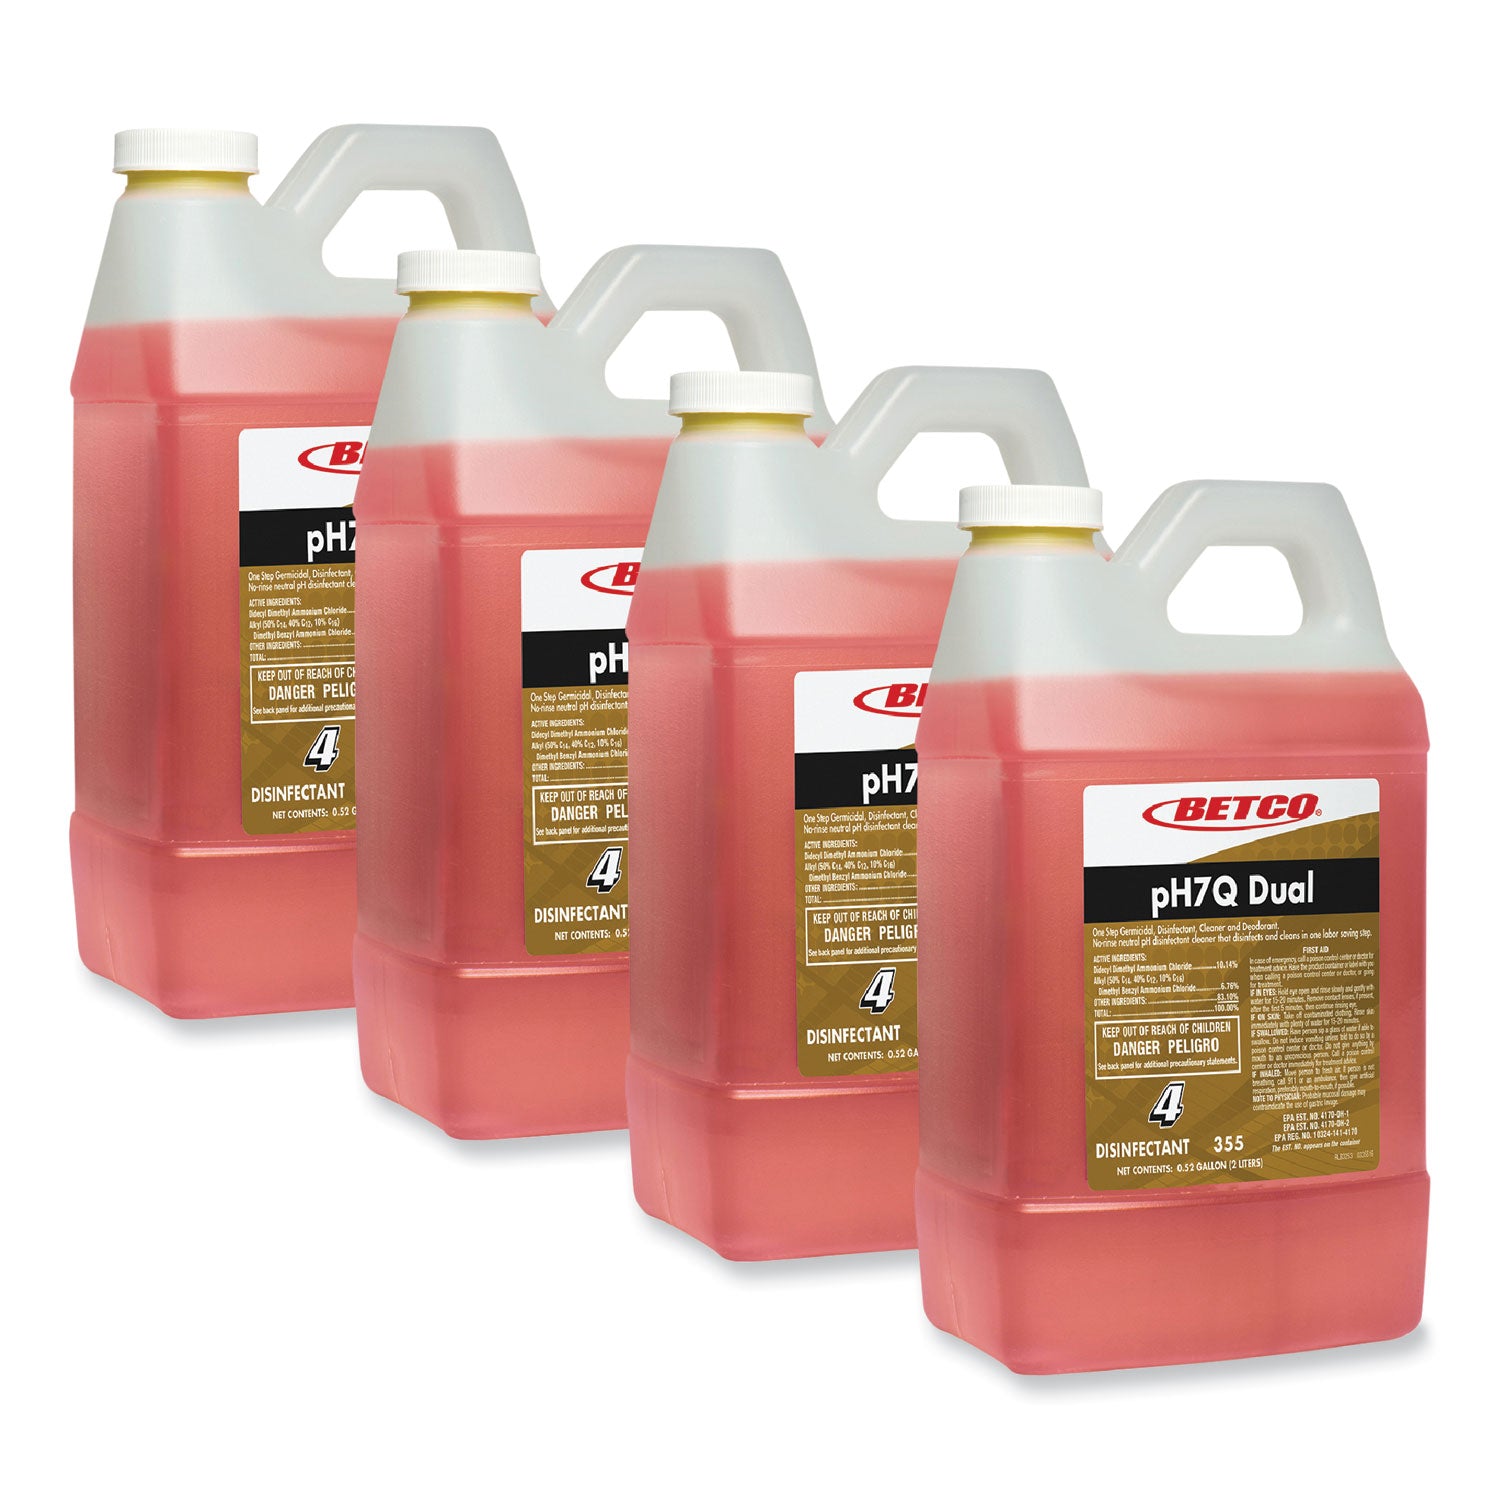 ph7q-dual-neutral-disinfectant-cleaner-lemon-scent-676-oz-bottle-4-carton_bet3554700 - 8